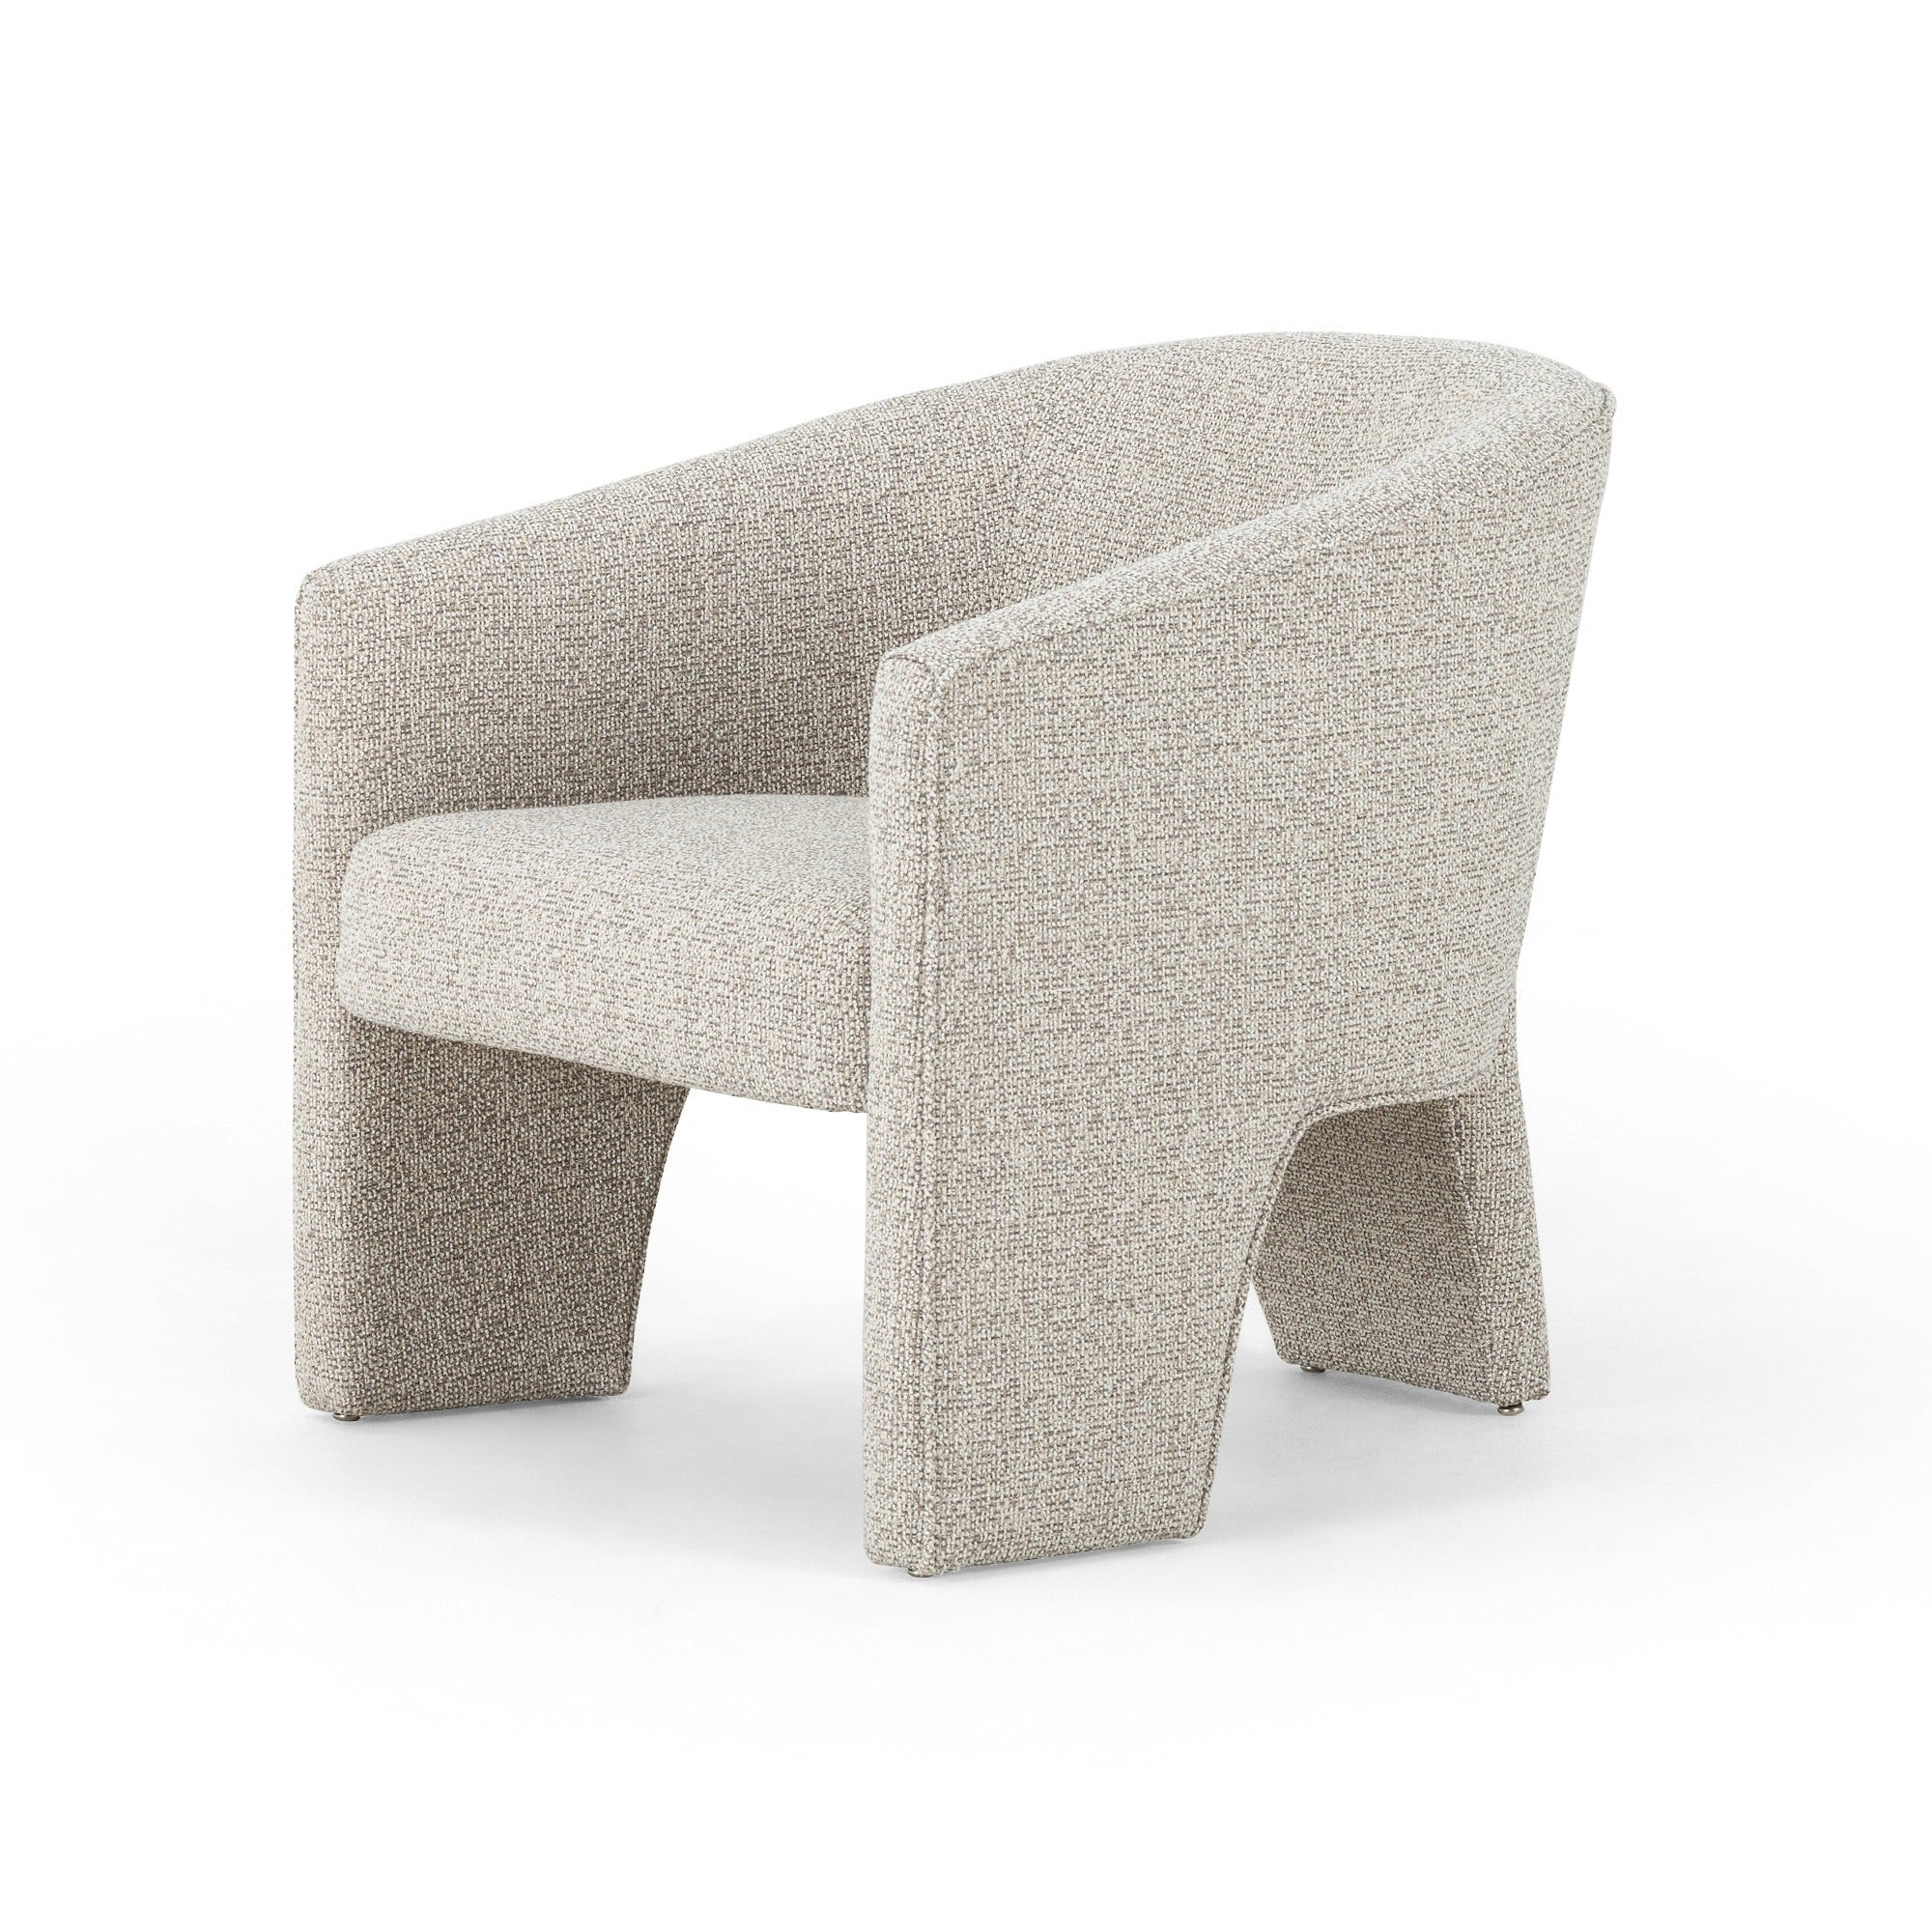 Fae Chair - StyleMeGHD - Modern Living Room Chair